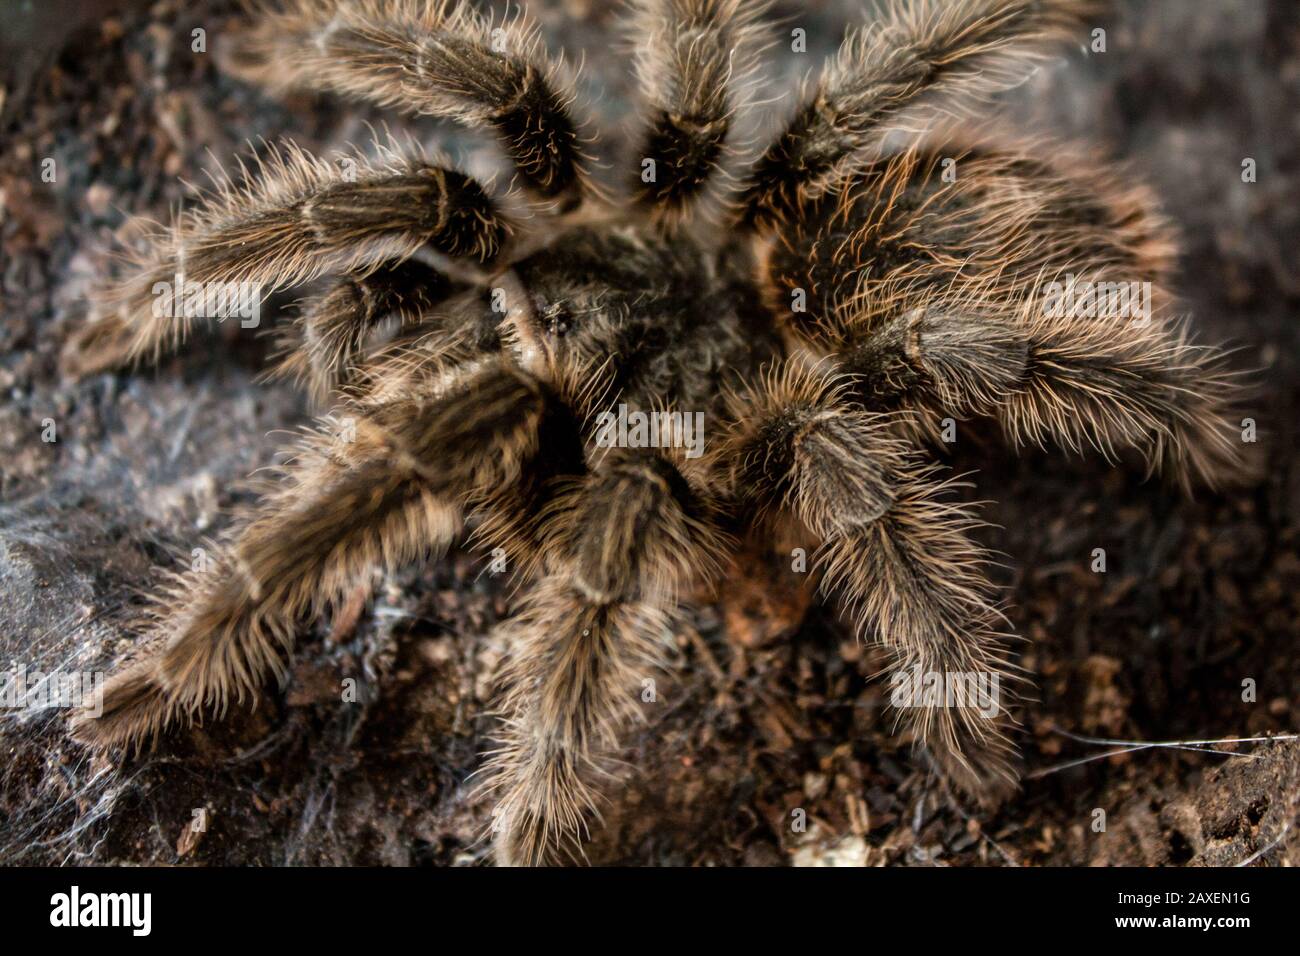 Clos-up of a pet tarantula inside a vivarium, exotic pet details Stock Photo